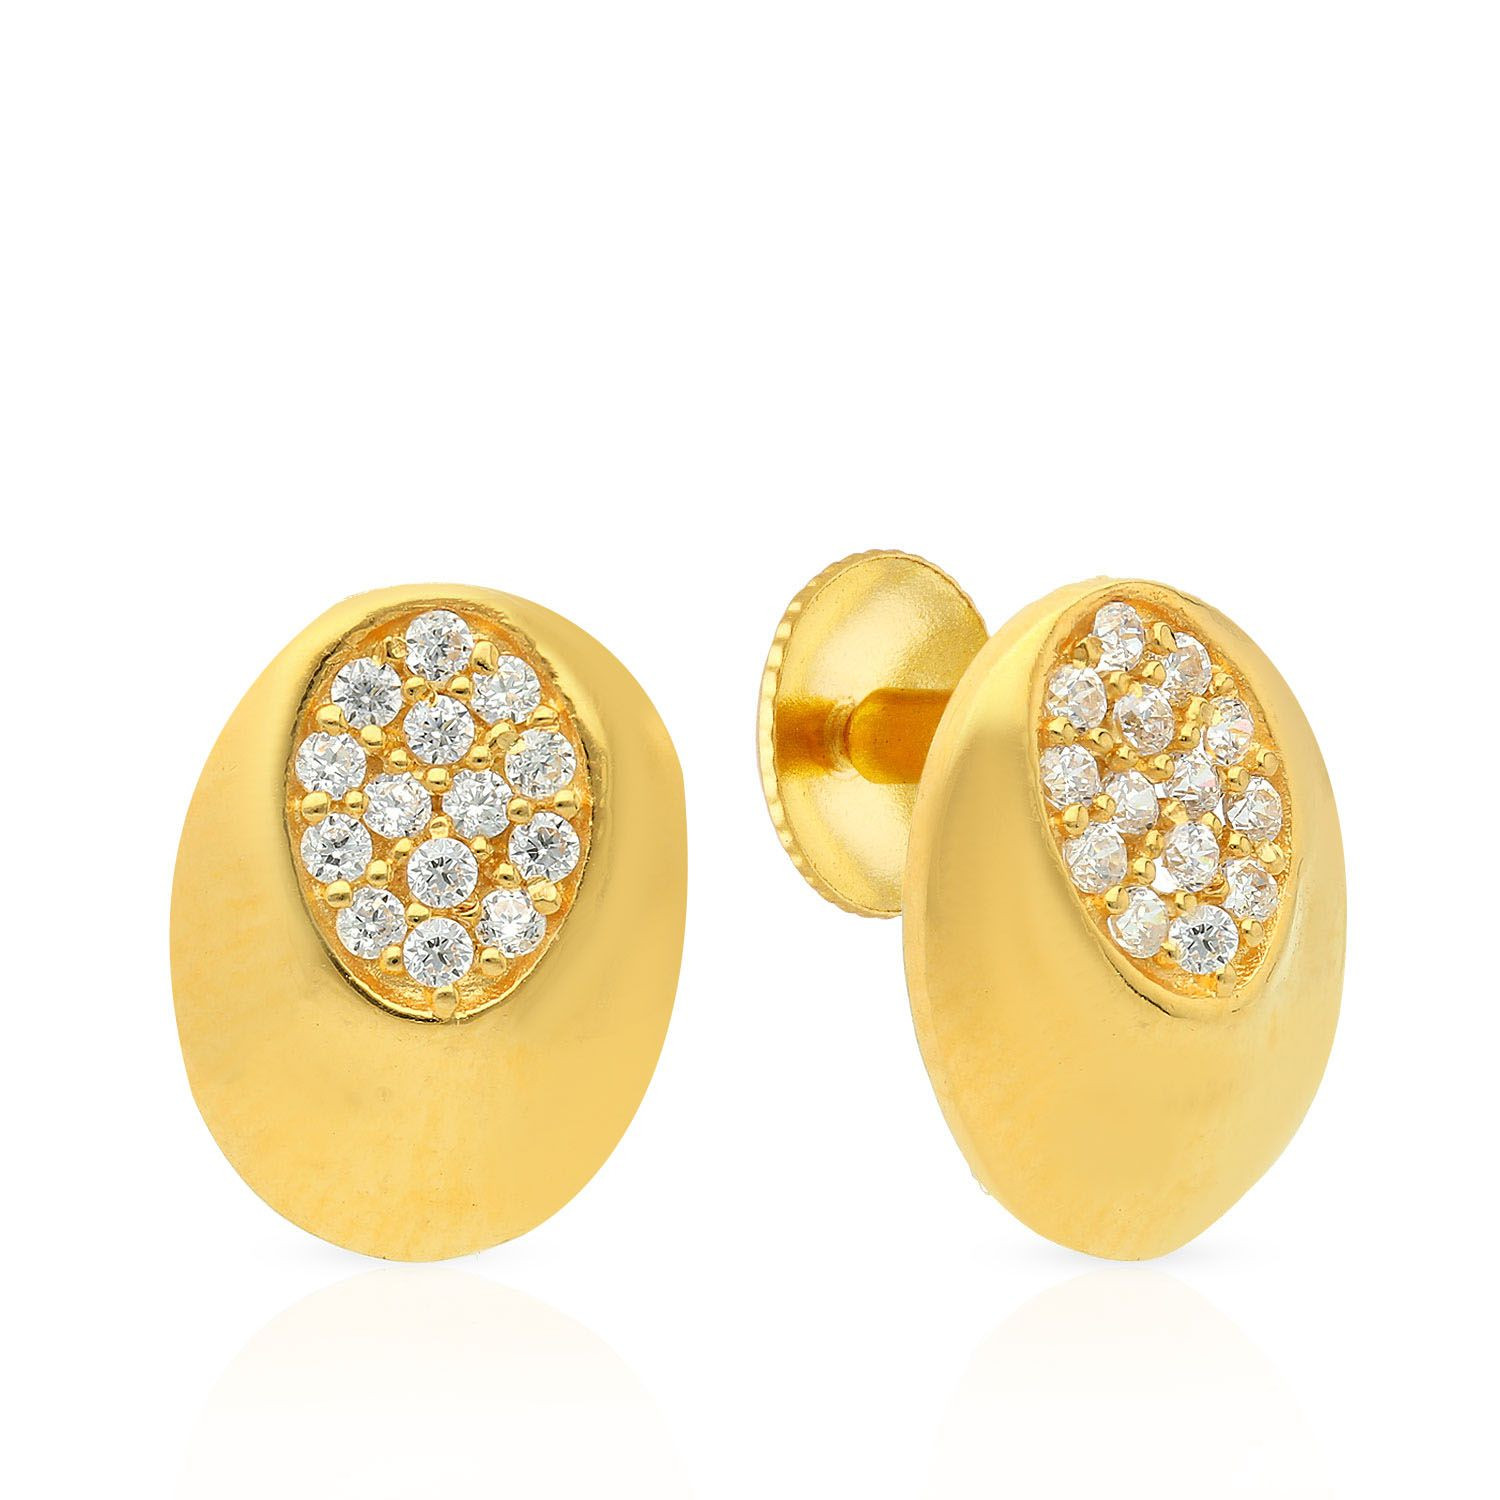 Details more than 149 second stud earrings malabar gold best  seveneduvn